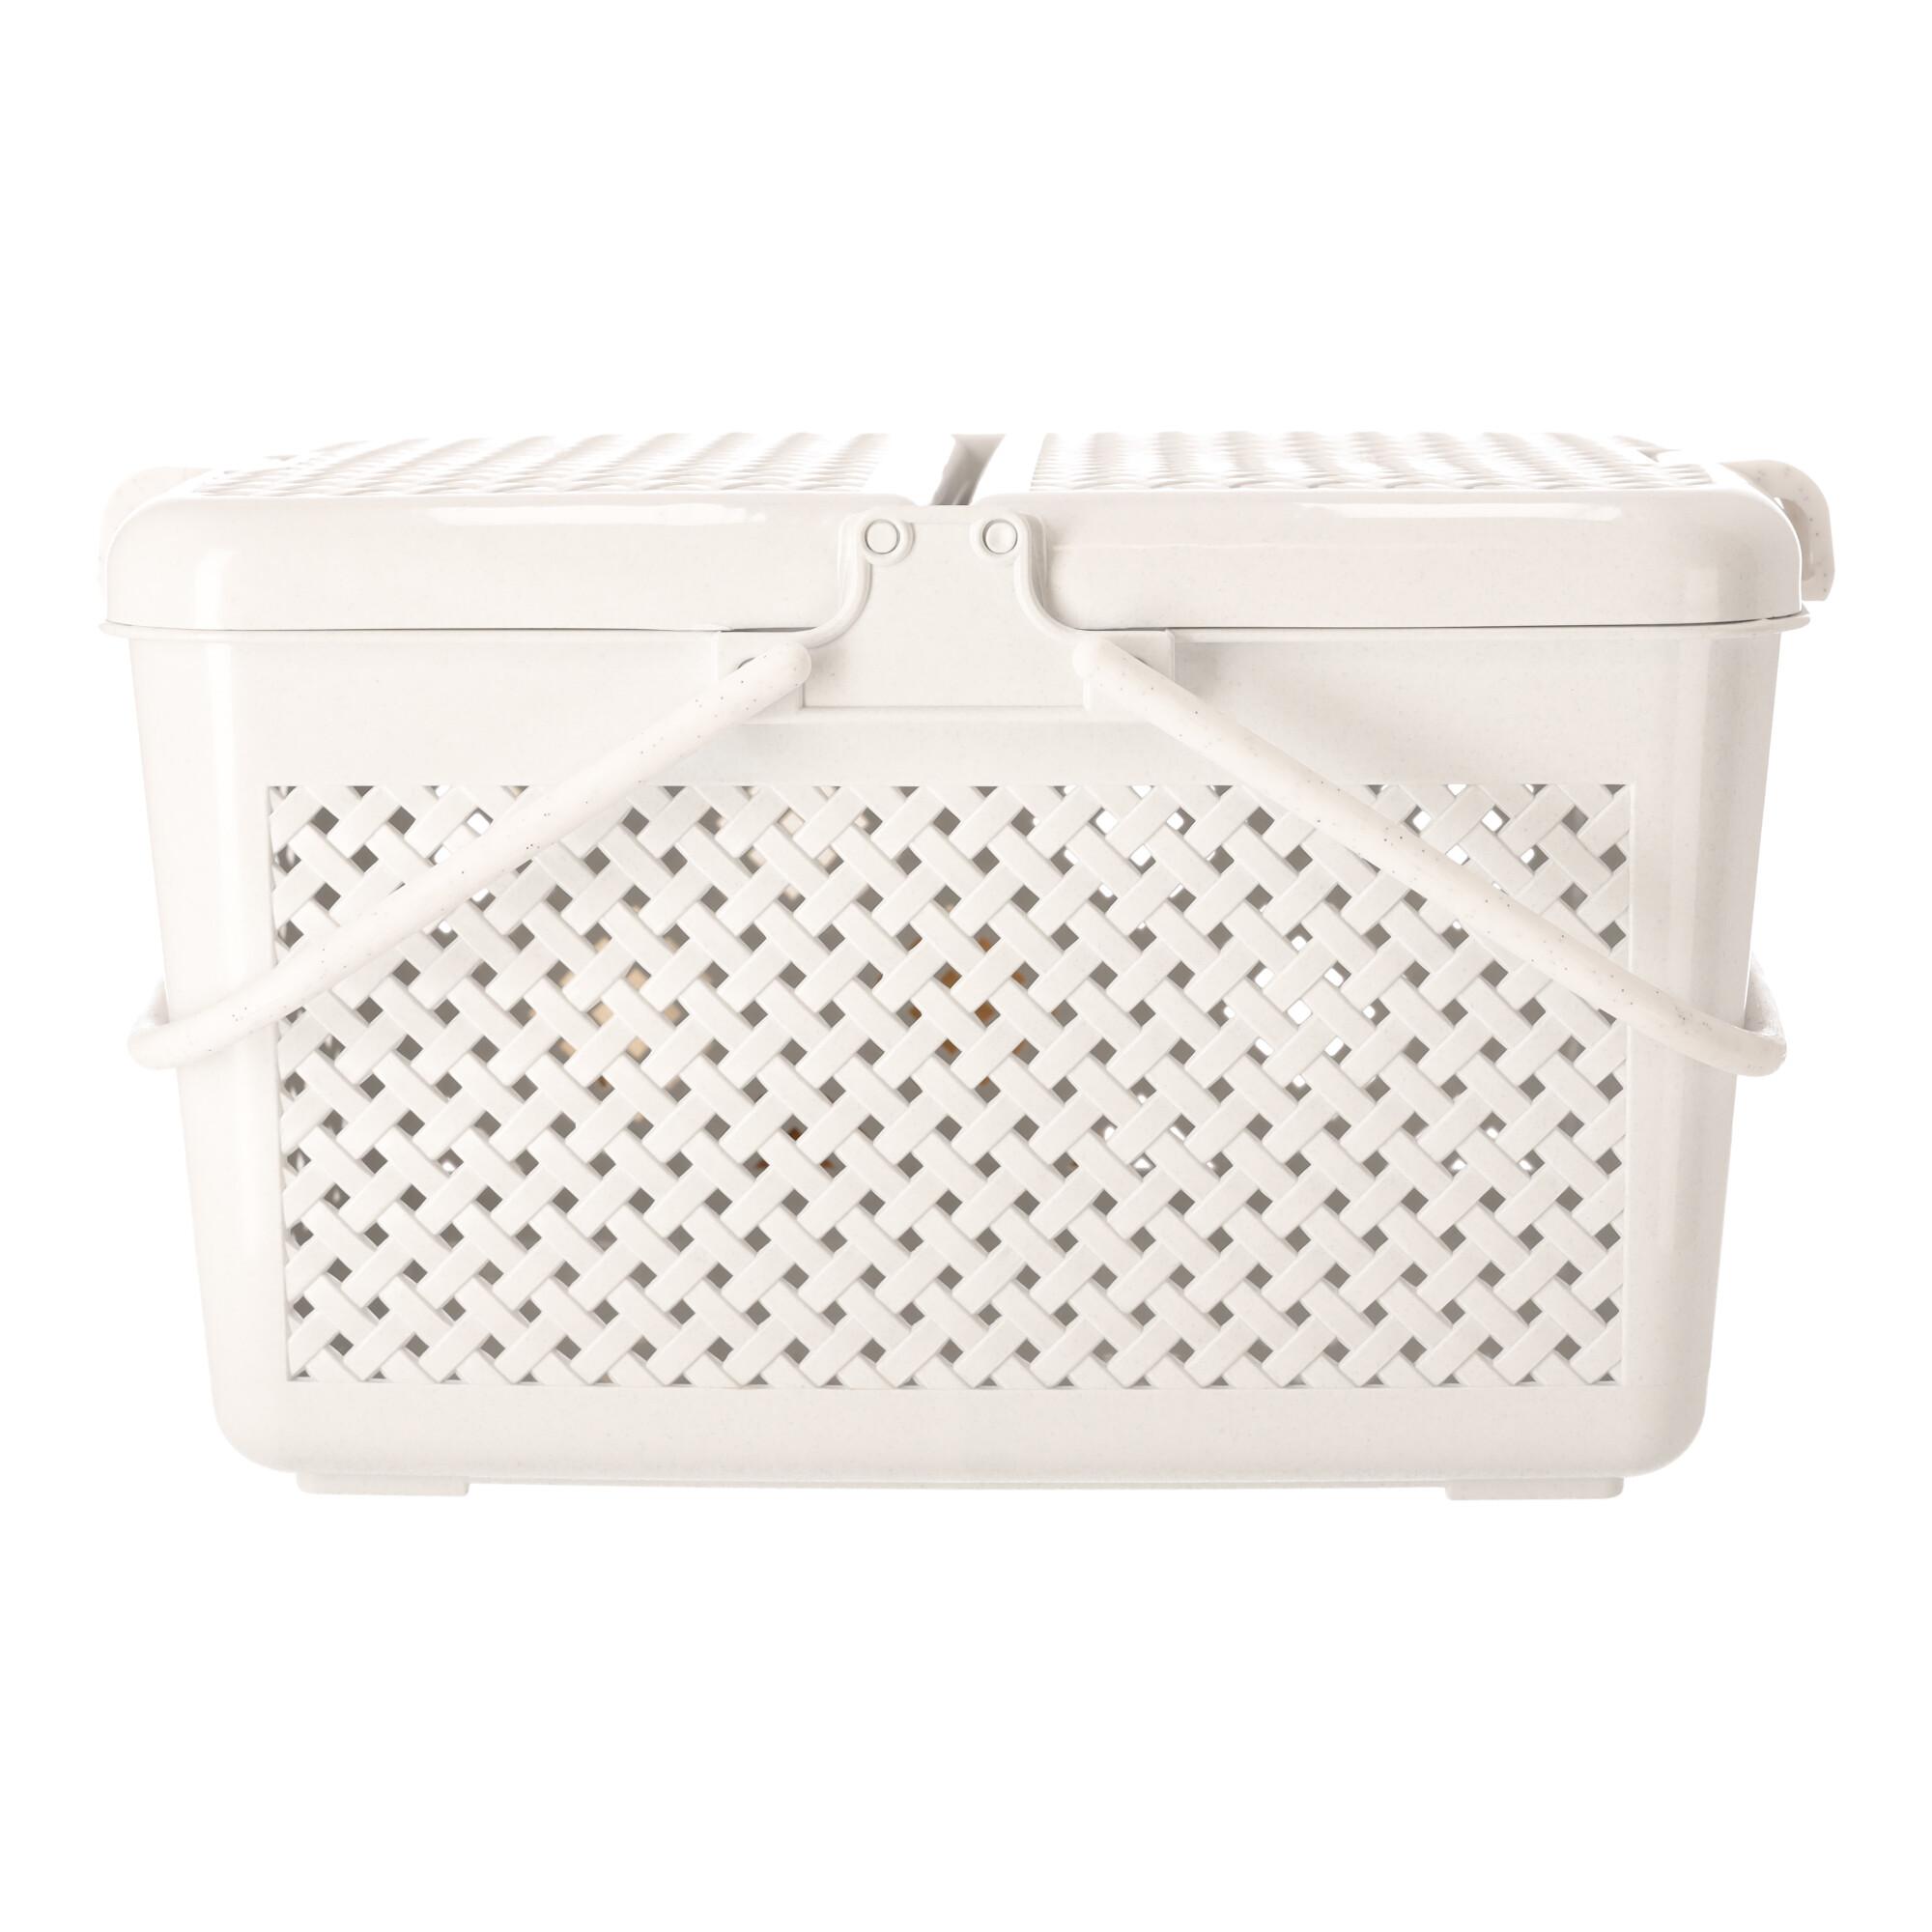 Rectangular picnic basket lockable white, POLISH PRODUCT